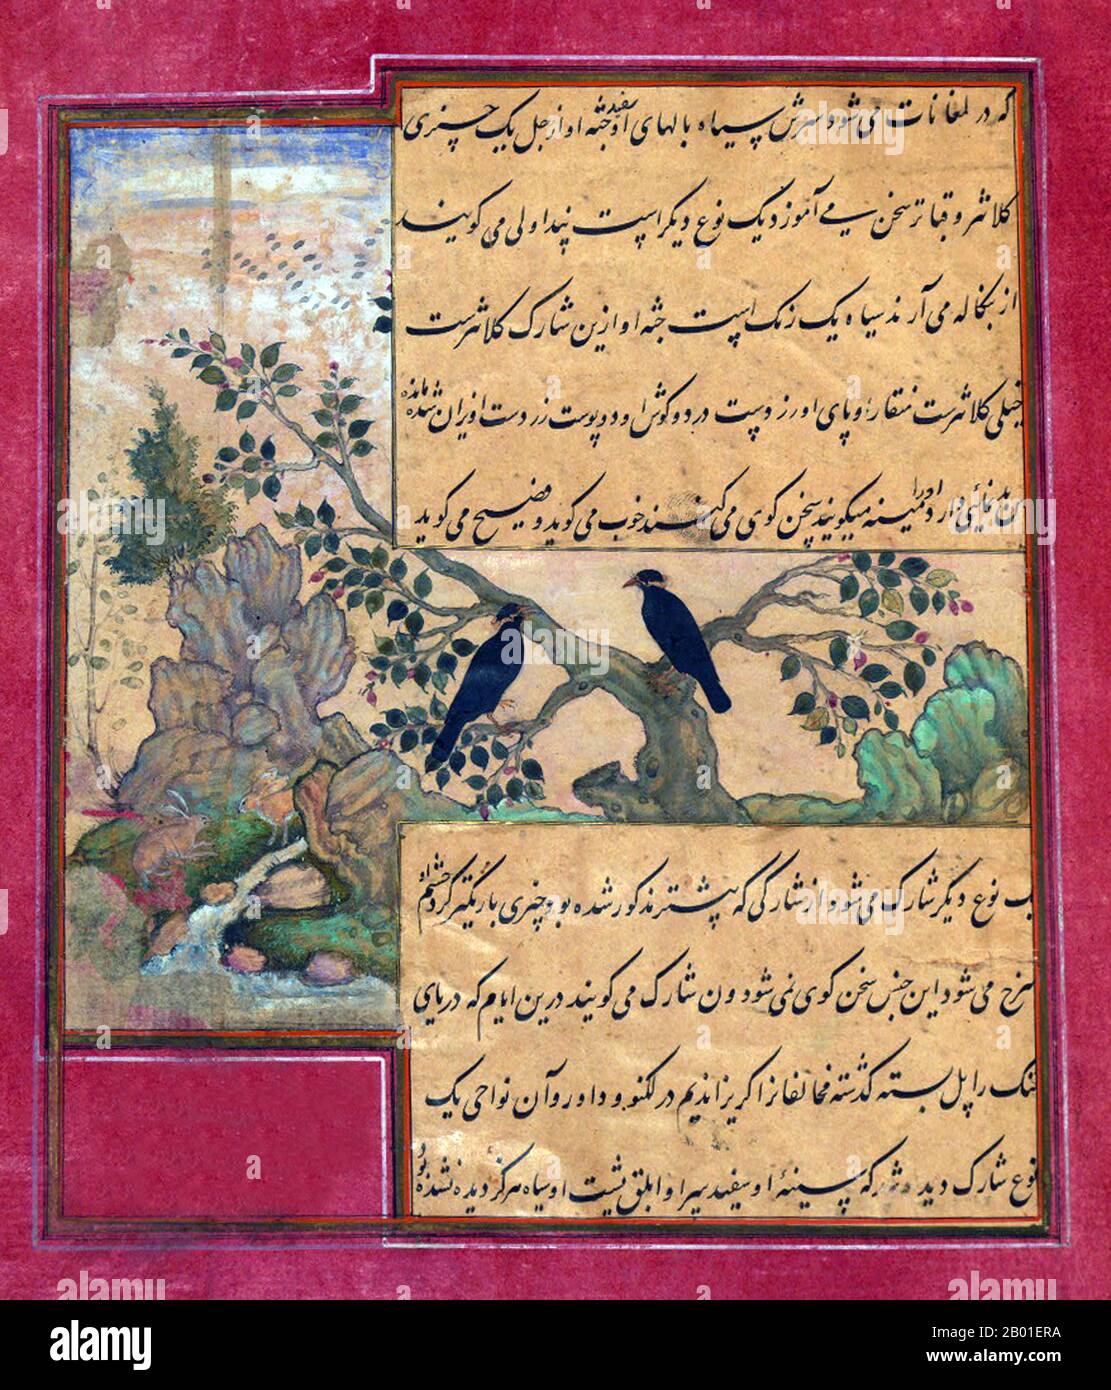 India: Animali di Hindustan - stellati, chiamato pandāvalī. Dipinto in miniatura del Baburnama, fine 16th ° secolo. Bāburnāma (letteralmente: 'Libro di Babur' o 'lettere di Babur'; altrimenti conosciuto come Tuzk-e Babri) è il nome dato alle memorie di Ẓahīr ud-Dīn Muḥammad Bābur (1483-1530), fondatore dell'Impero Mughal e bisnonno di Timur. Si tratta di un'opera autobiografica, originariamente scritta in lingua Chagatai, nota a Babur come 'Turki' (che significa Turkic), la lingua parlata degli Andijan-Timuridi. Foto Stock